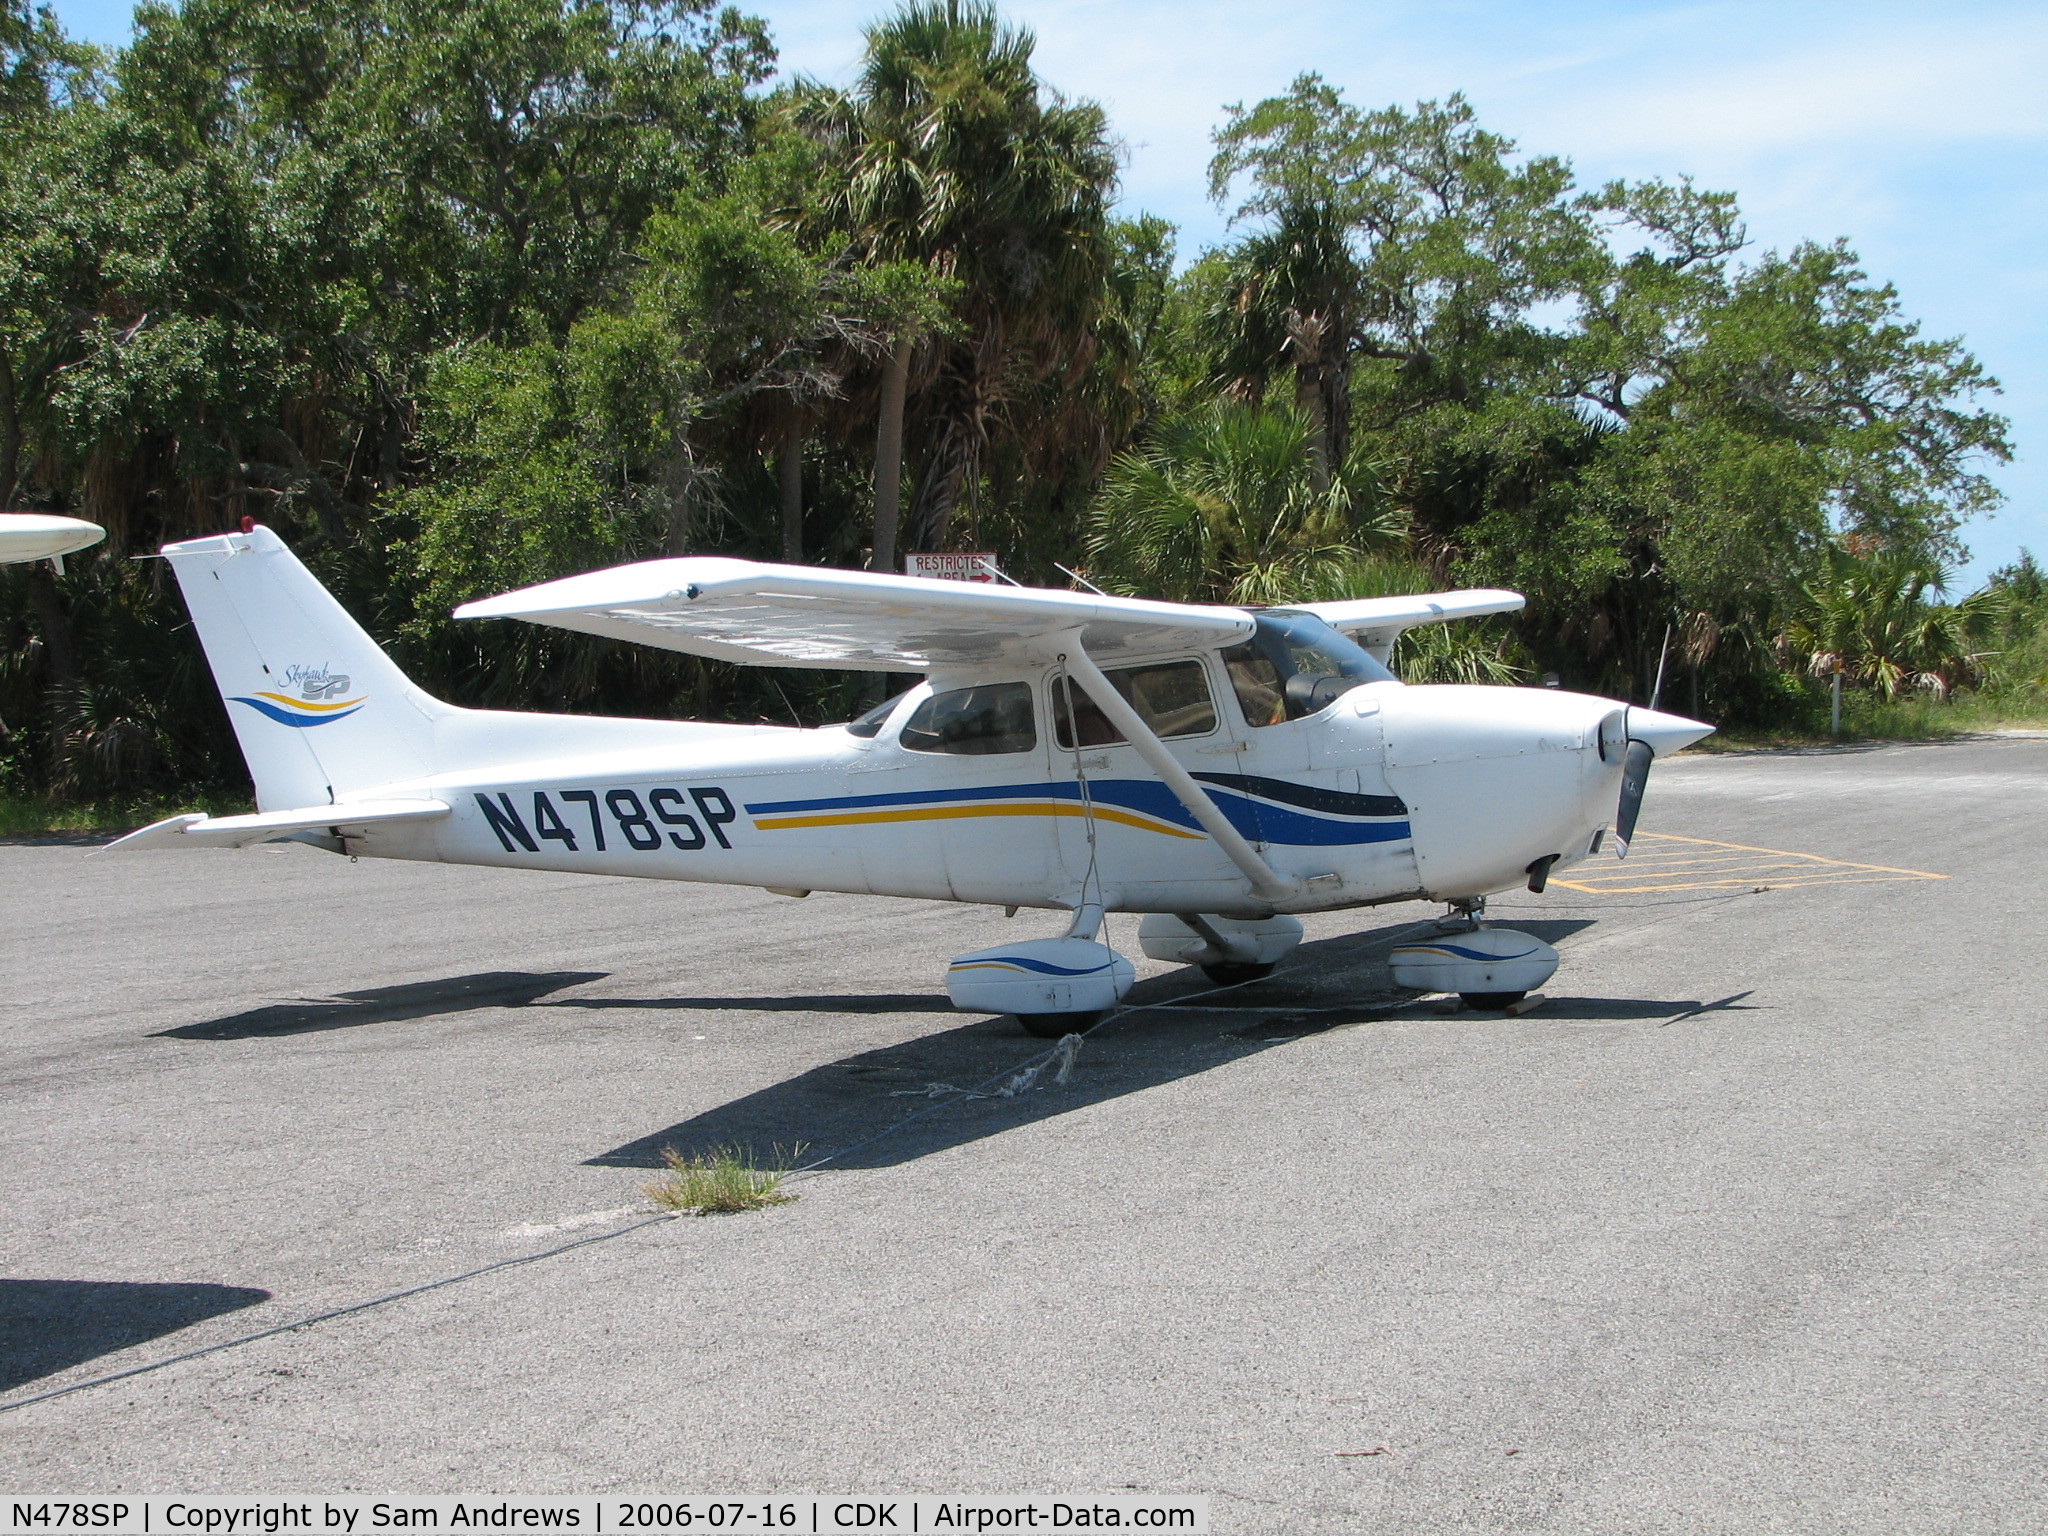 N478SP, 1998 Cessna 172S C/N 172S8023, Just one of the a/c I photo'd at CDK